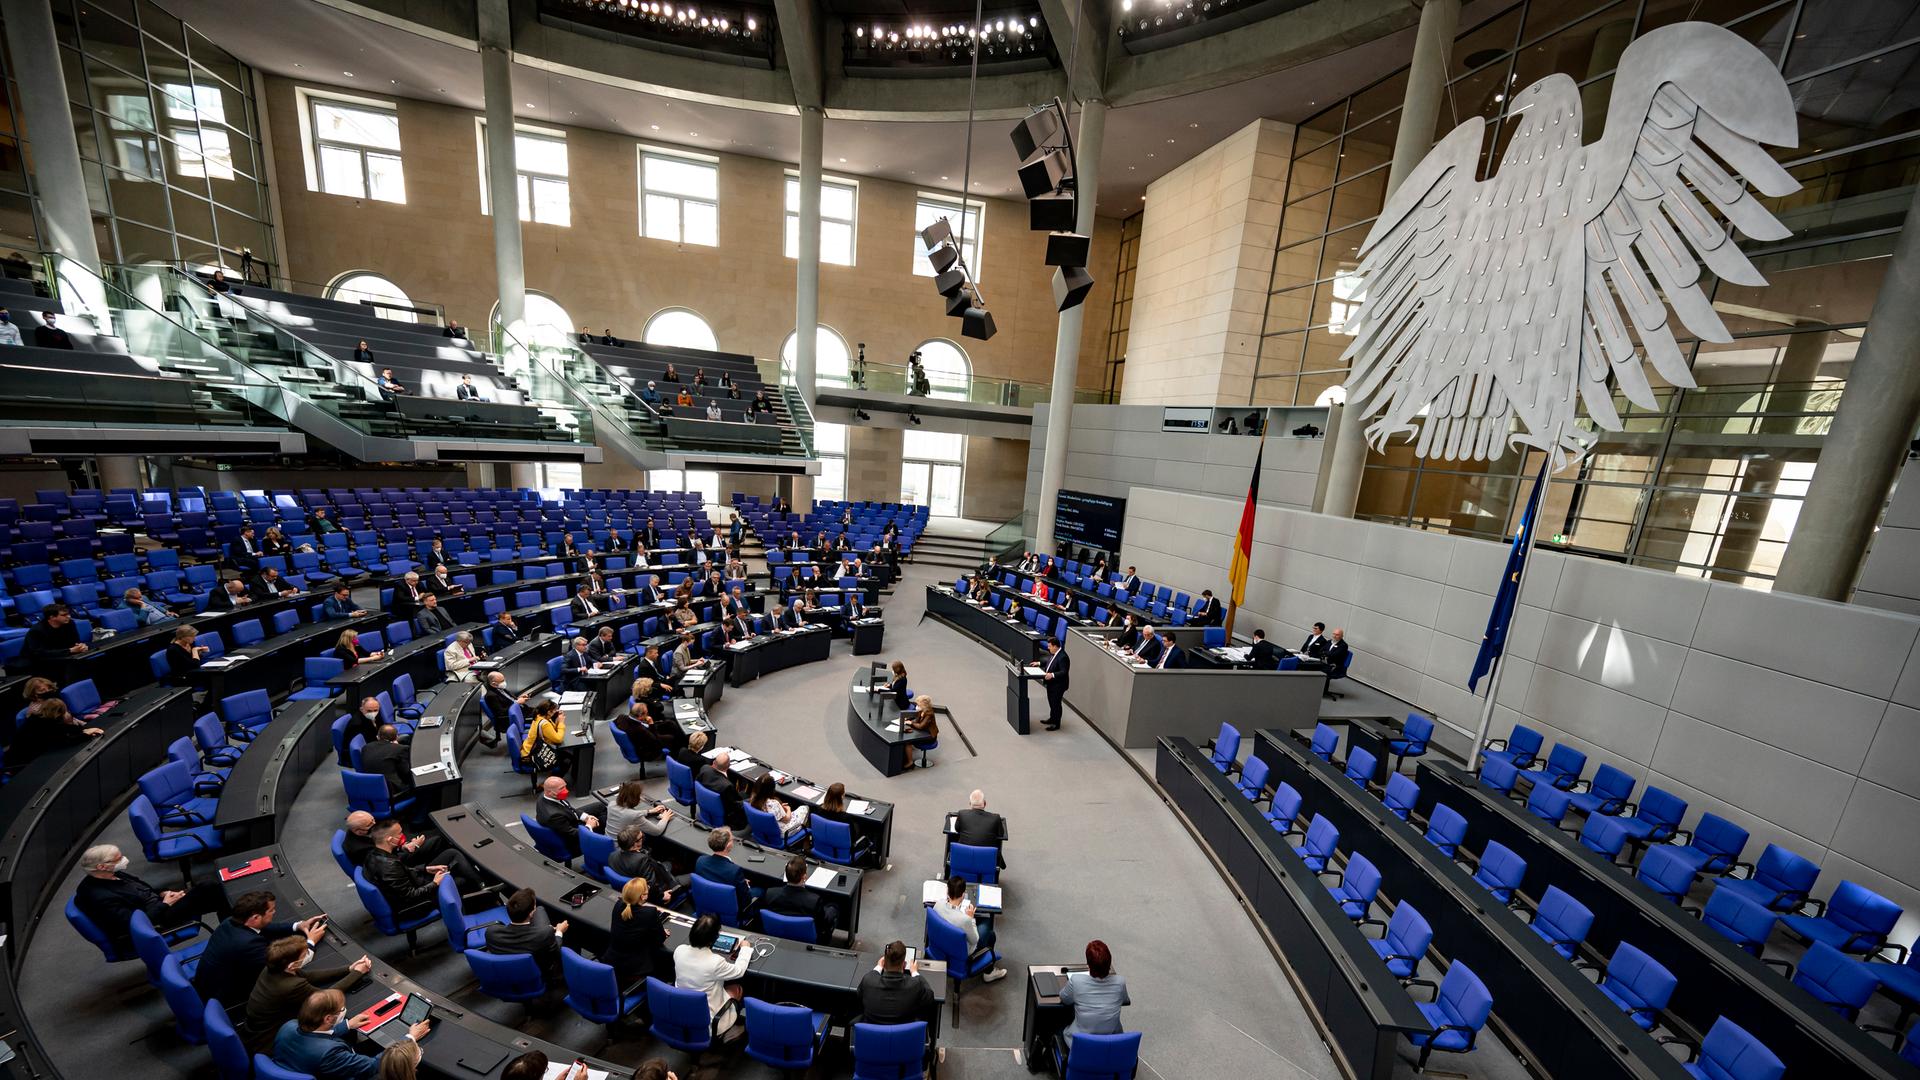 Umstrittene Personalie - Bundestag stimmt über Ferda Ataman als neue Antidiskriminierungsbeauftragte ab